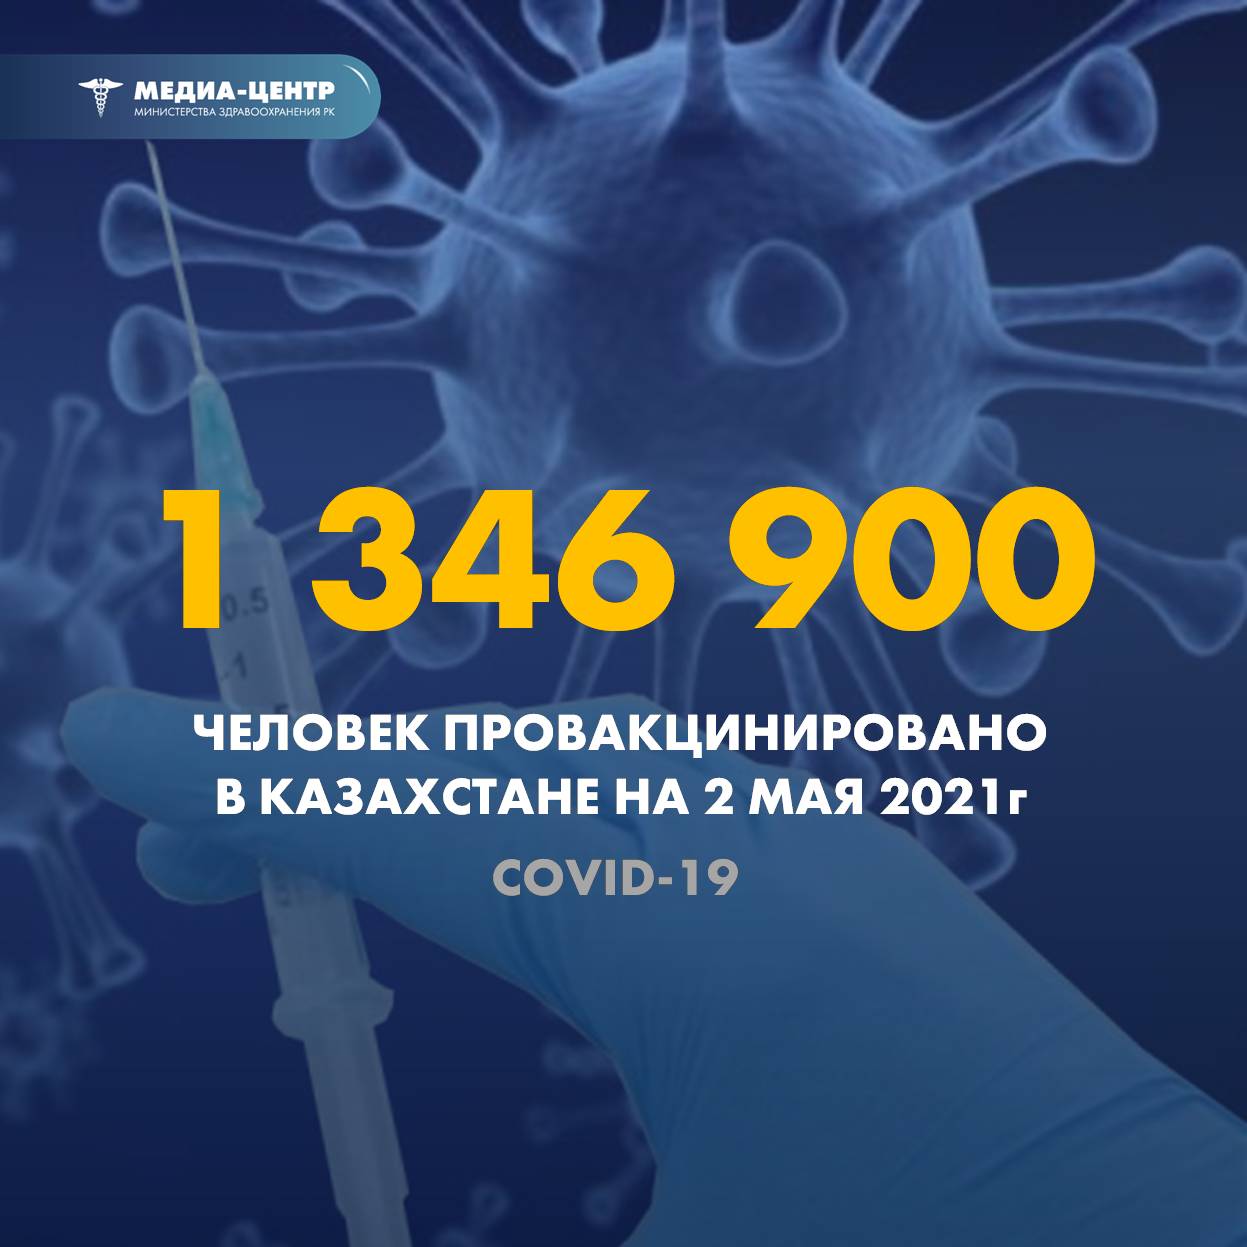 1 346 900 человек провакцинировано в Казахстане на 2 мая 2021 г